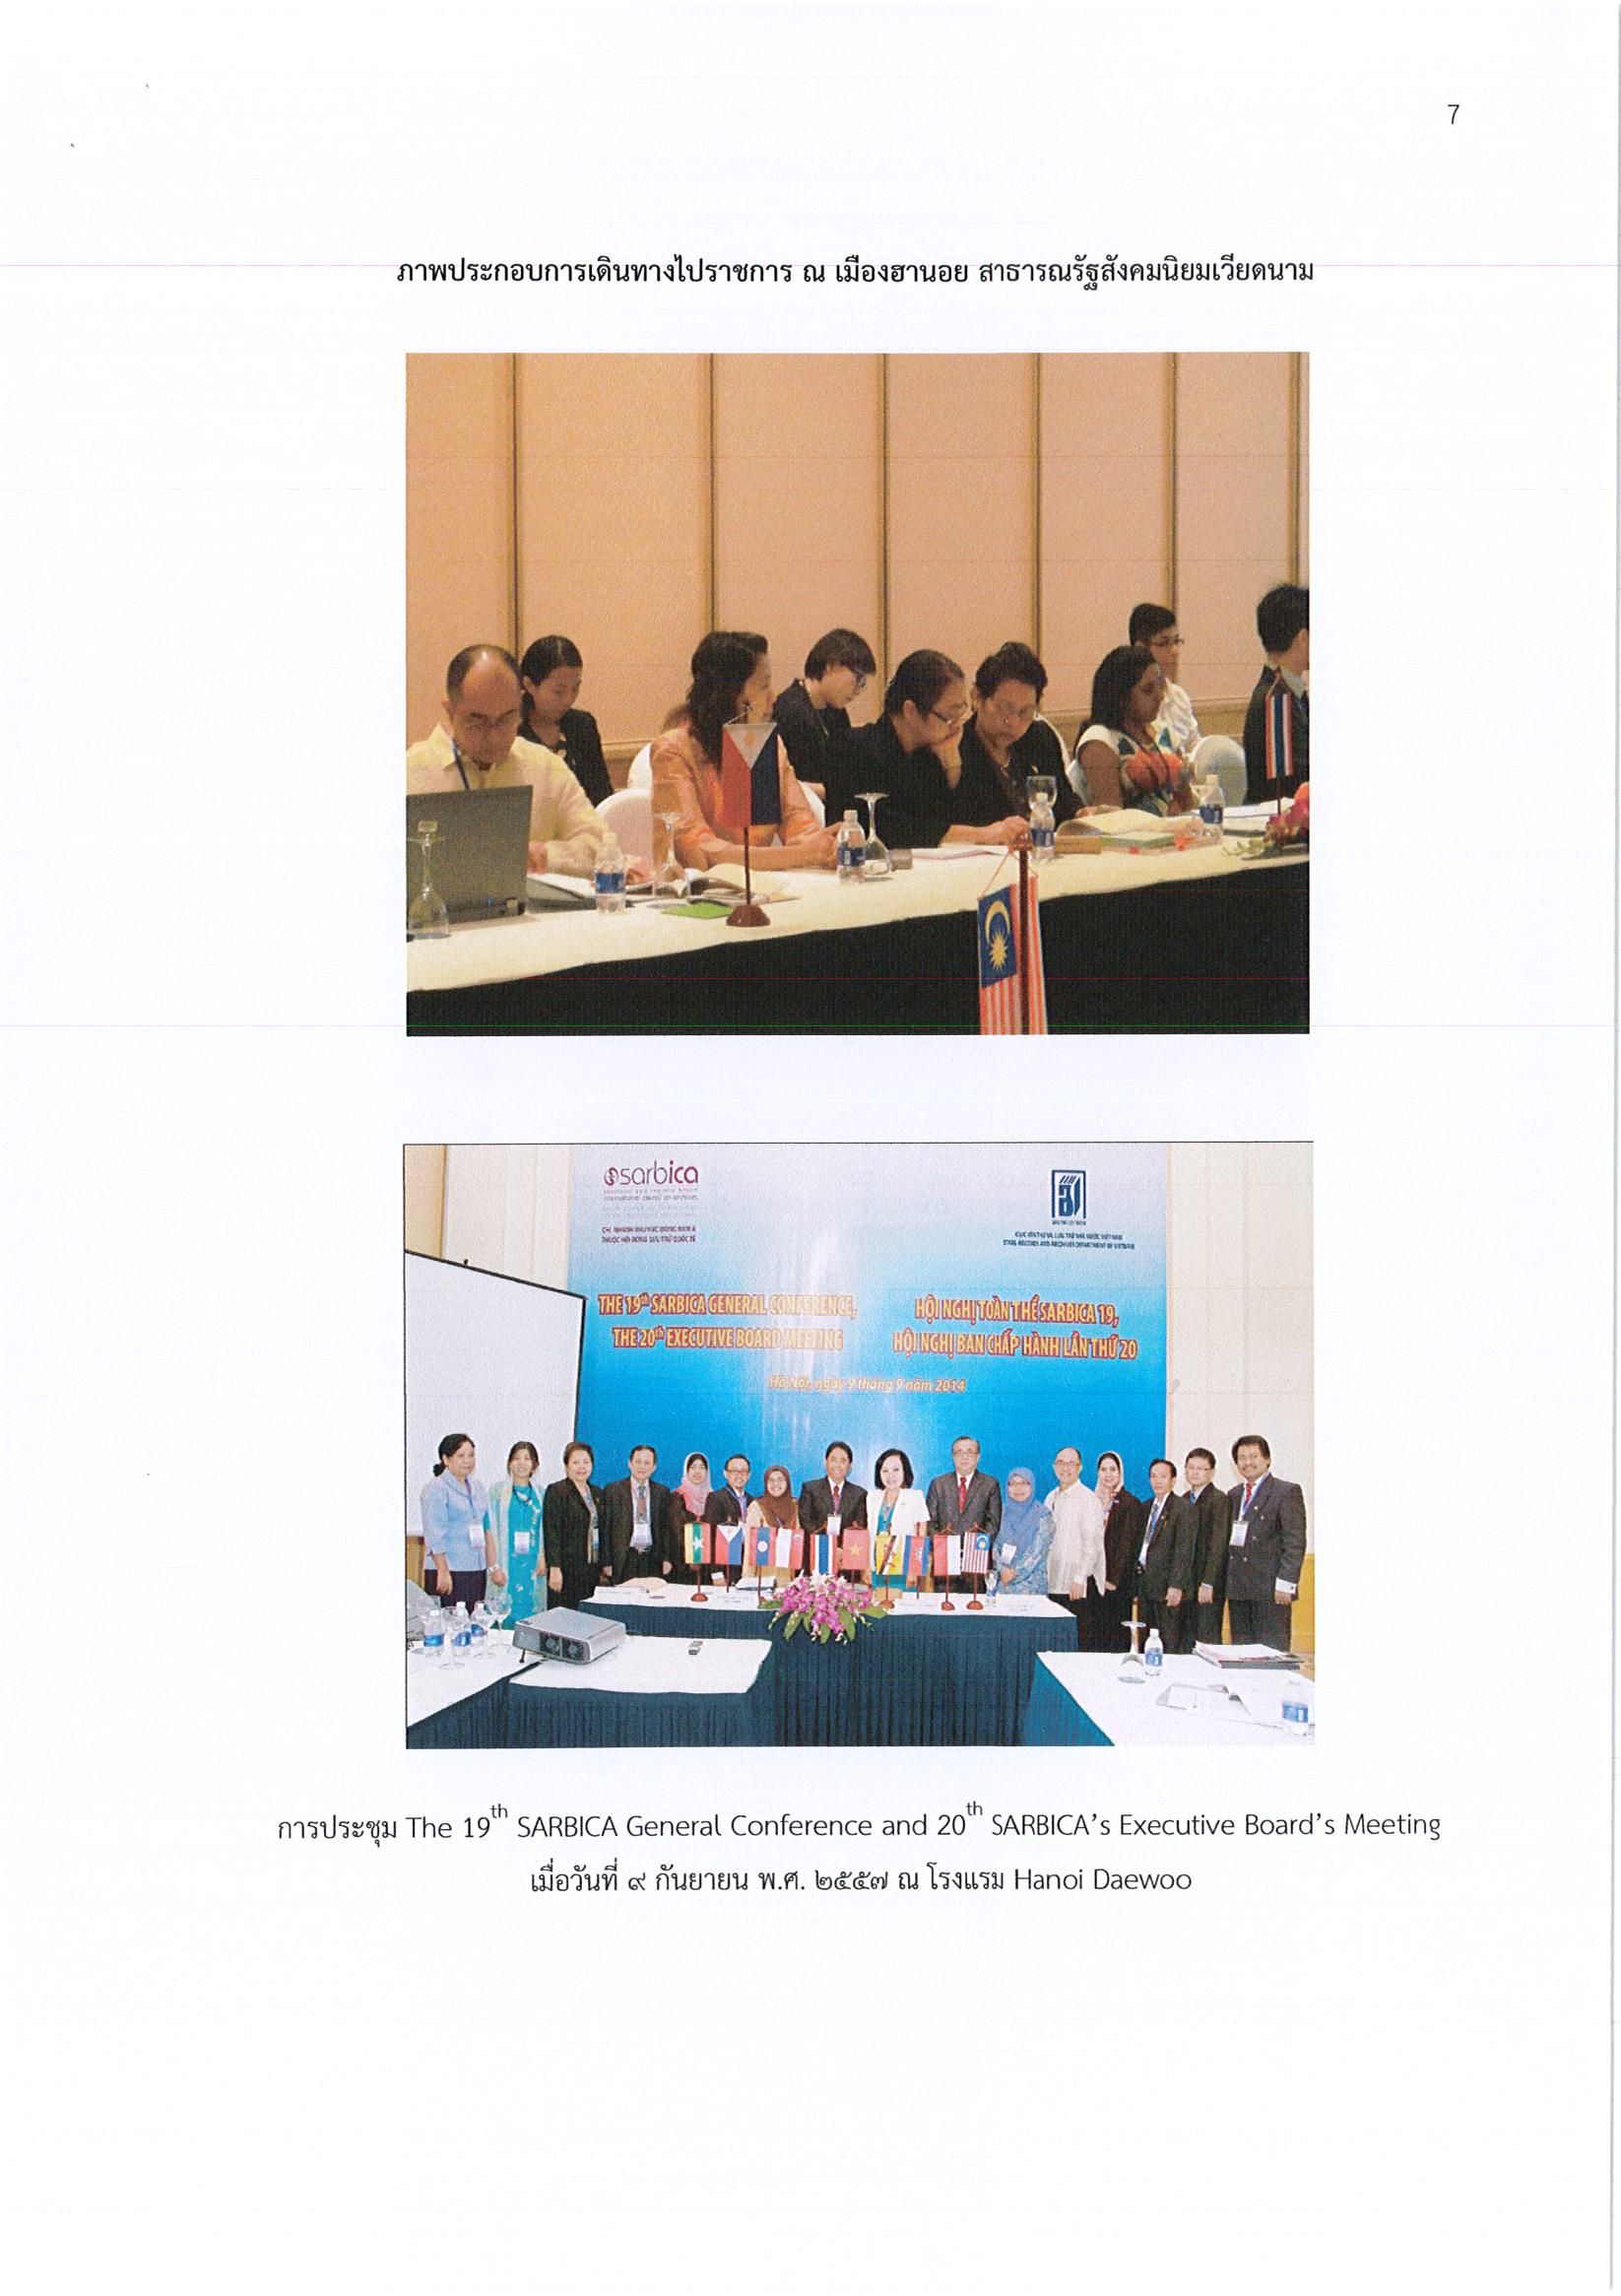 รายงานการเดินทางไปราชการ ณ สาธารณรัฐสังคมนิยมเวียดนาม ระหว่างวันที่ 8 – 12 กันยายน 2557 โครงการเข้าร่วมประชุมและสัมมนาทางวิชาการของสภาจดหมายเหตุแห่งชาติระหว่างประเทศประจำภาคพื้นเอเชียตะวันออกเฉียงใต้